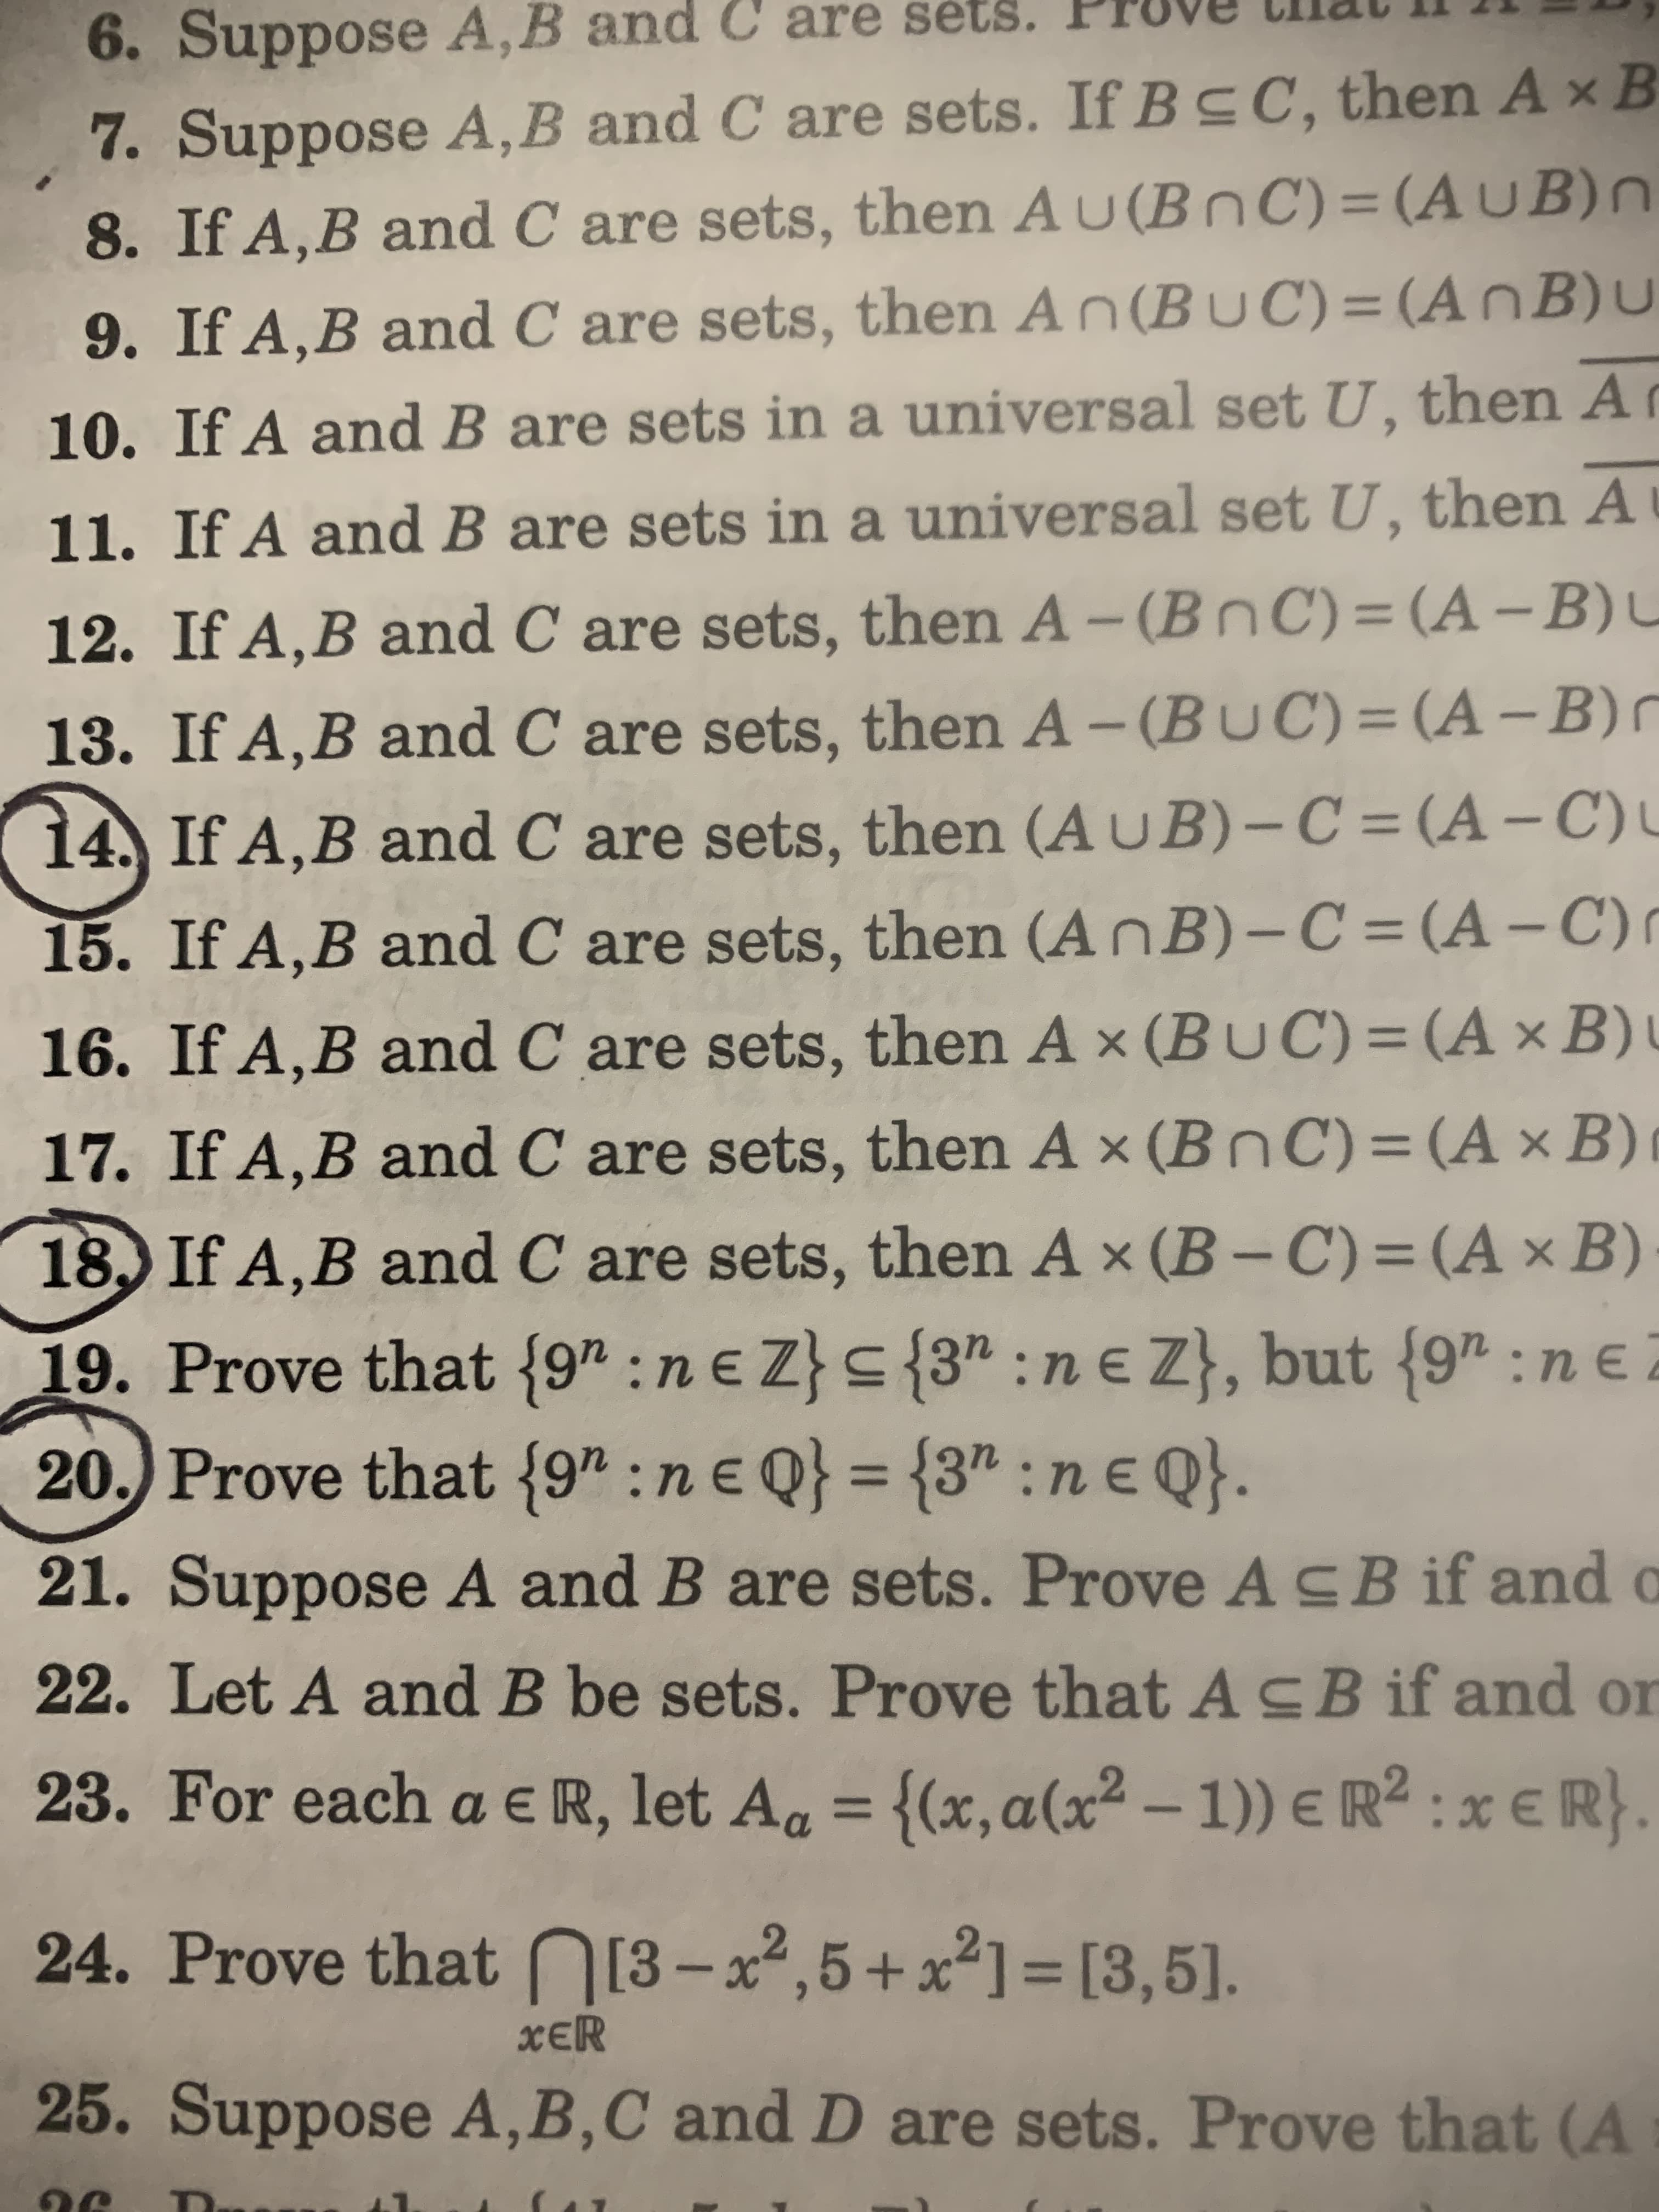 20.) Prove that {9" :n€ Q} = {3" : ne Q}.
%3D
